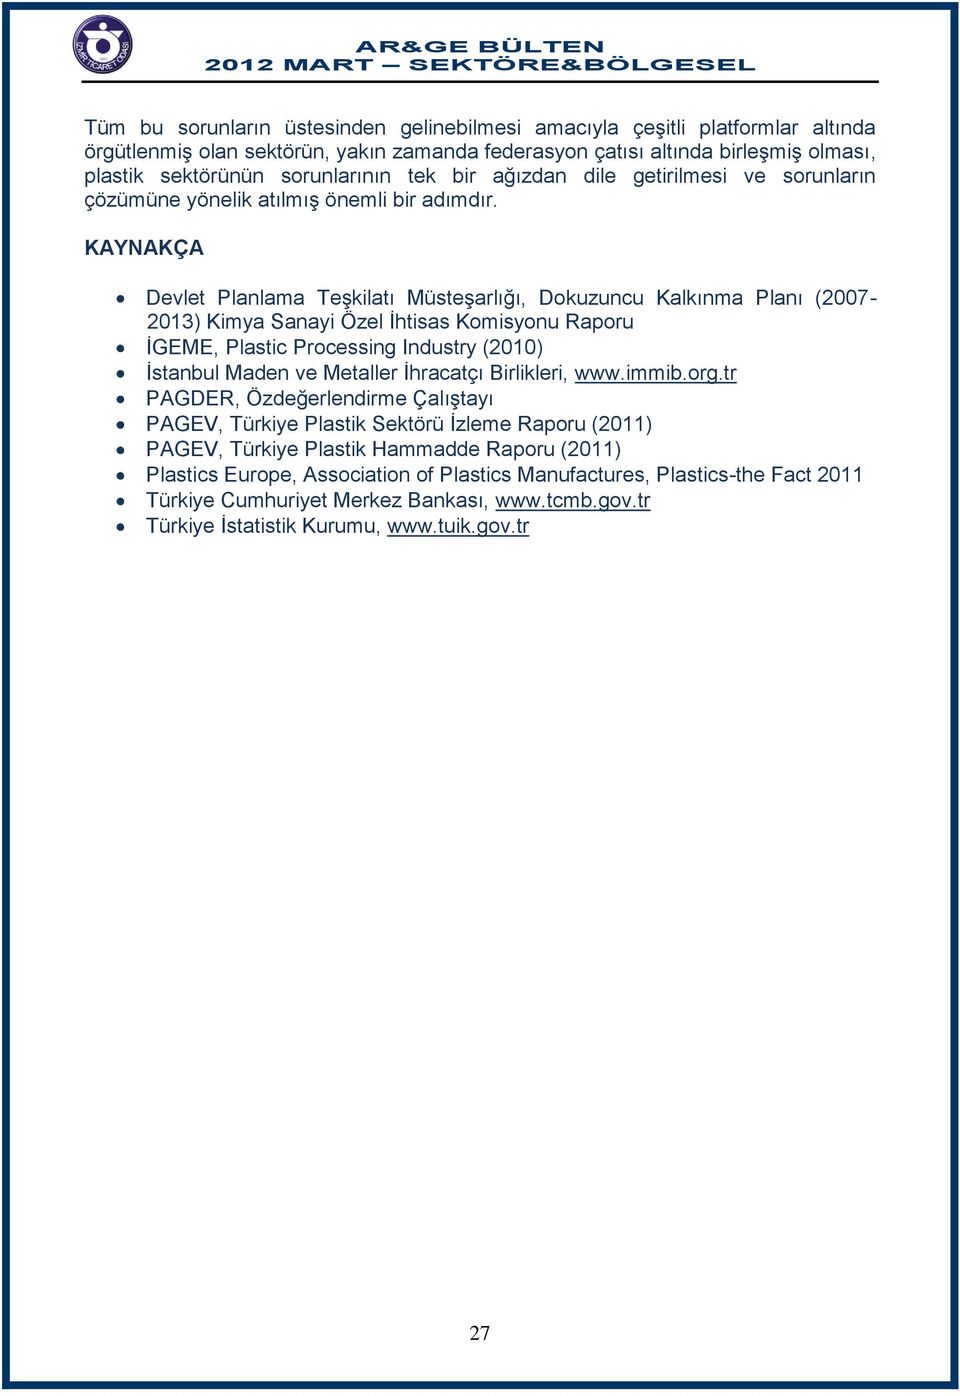 KAYNAKÇA Devlet Planlama Teşkilatı Müsteşarlığı, Dokuzuncu Kalkınma Planı (2007-2013) Kimya Sanayi Özel İhtisas Komisyonu Raporu İGEME, Plastic Processing Industry (2010) İstanbul Maden ve Metaller